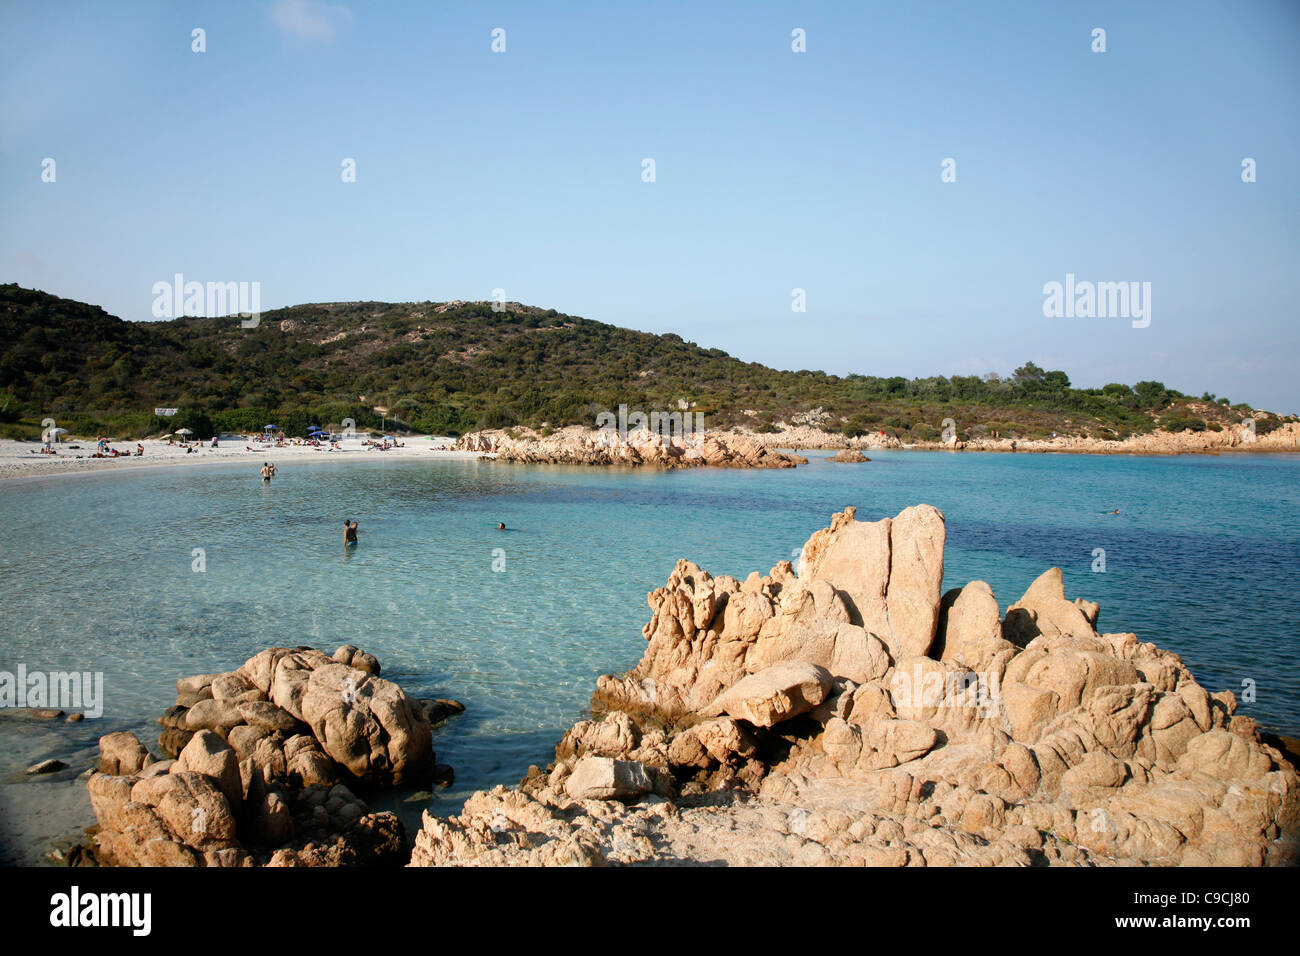 Principe beach, Costa Smeralda, Sardinia, Italy. Stock Photo